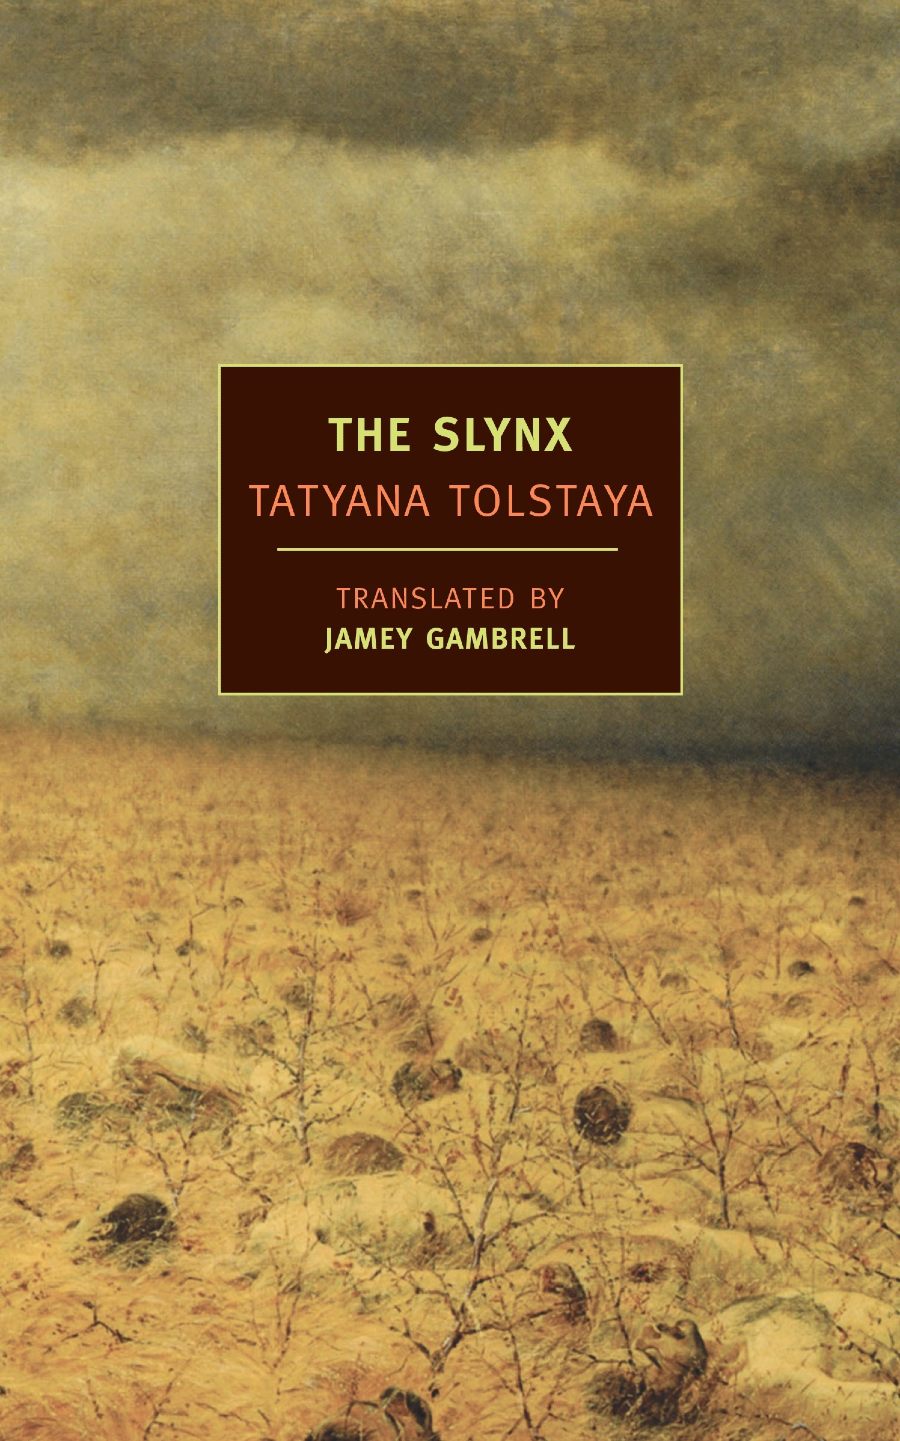 the slynx apocalyptic novel